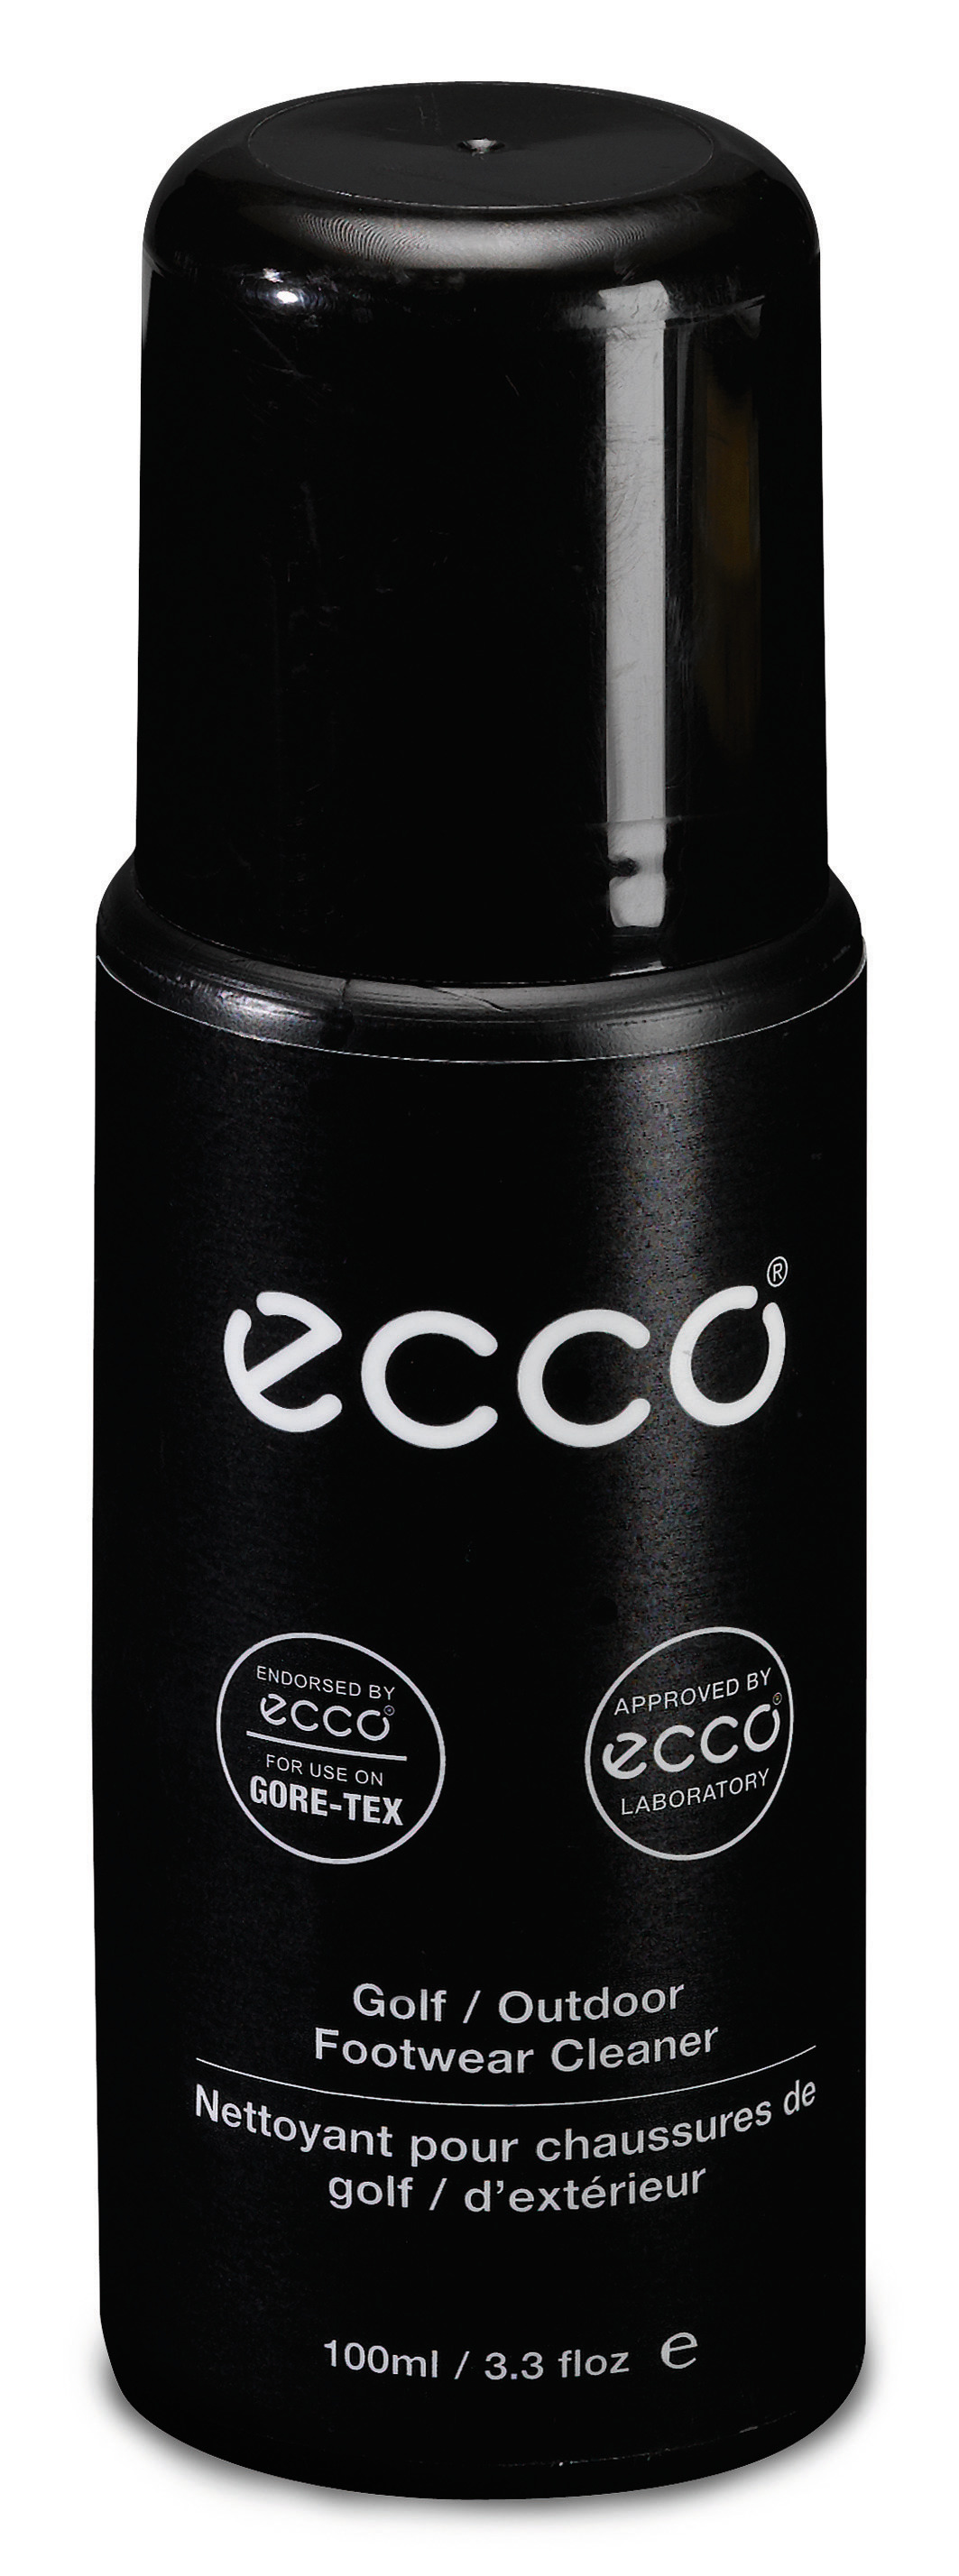 ECCO GOLF / OUTDOOR FOOTWEAR CLEANER